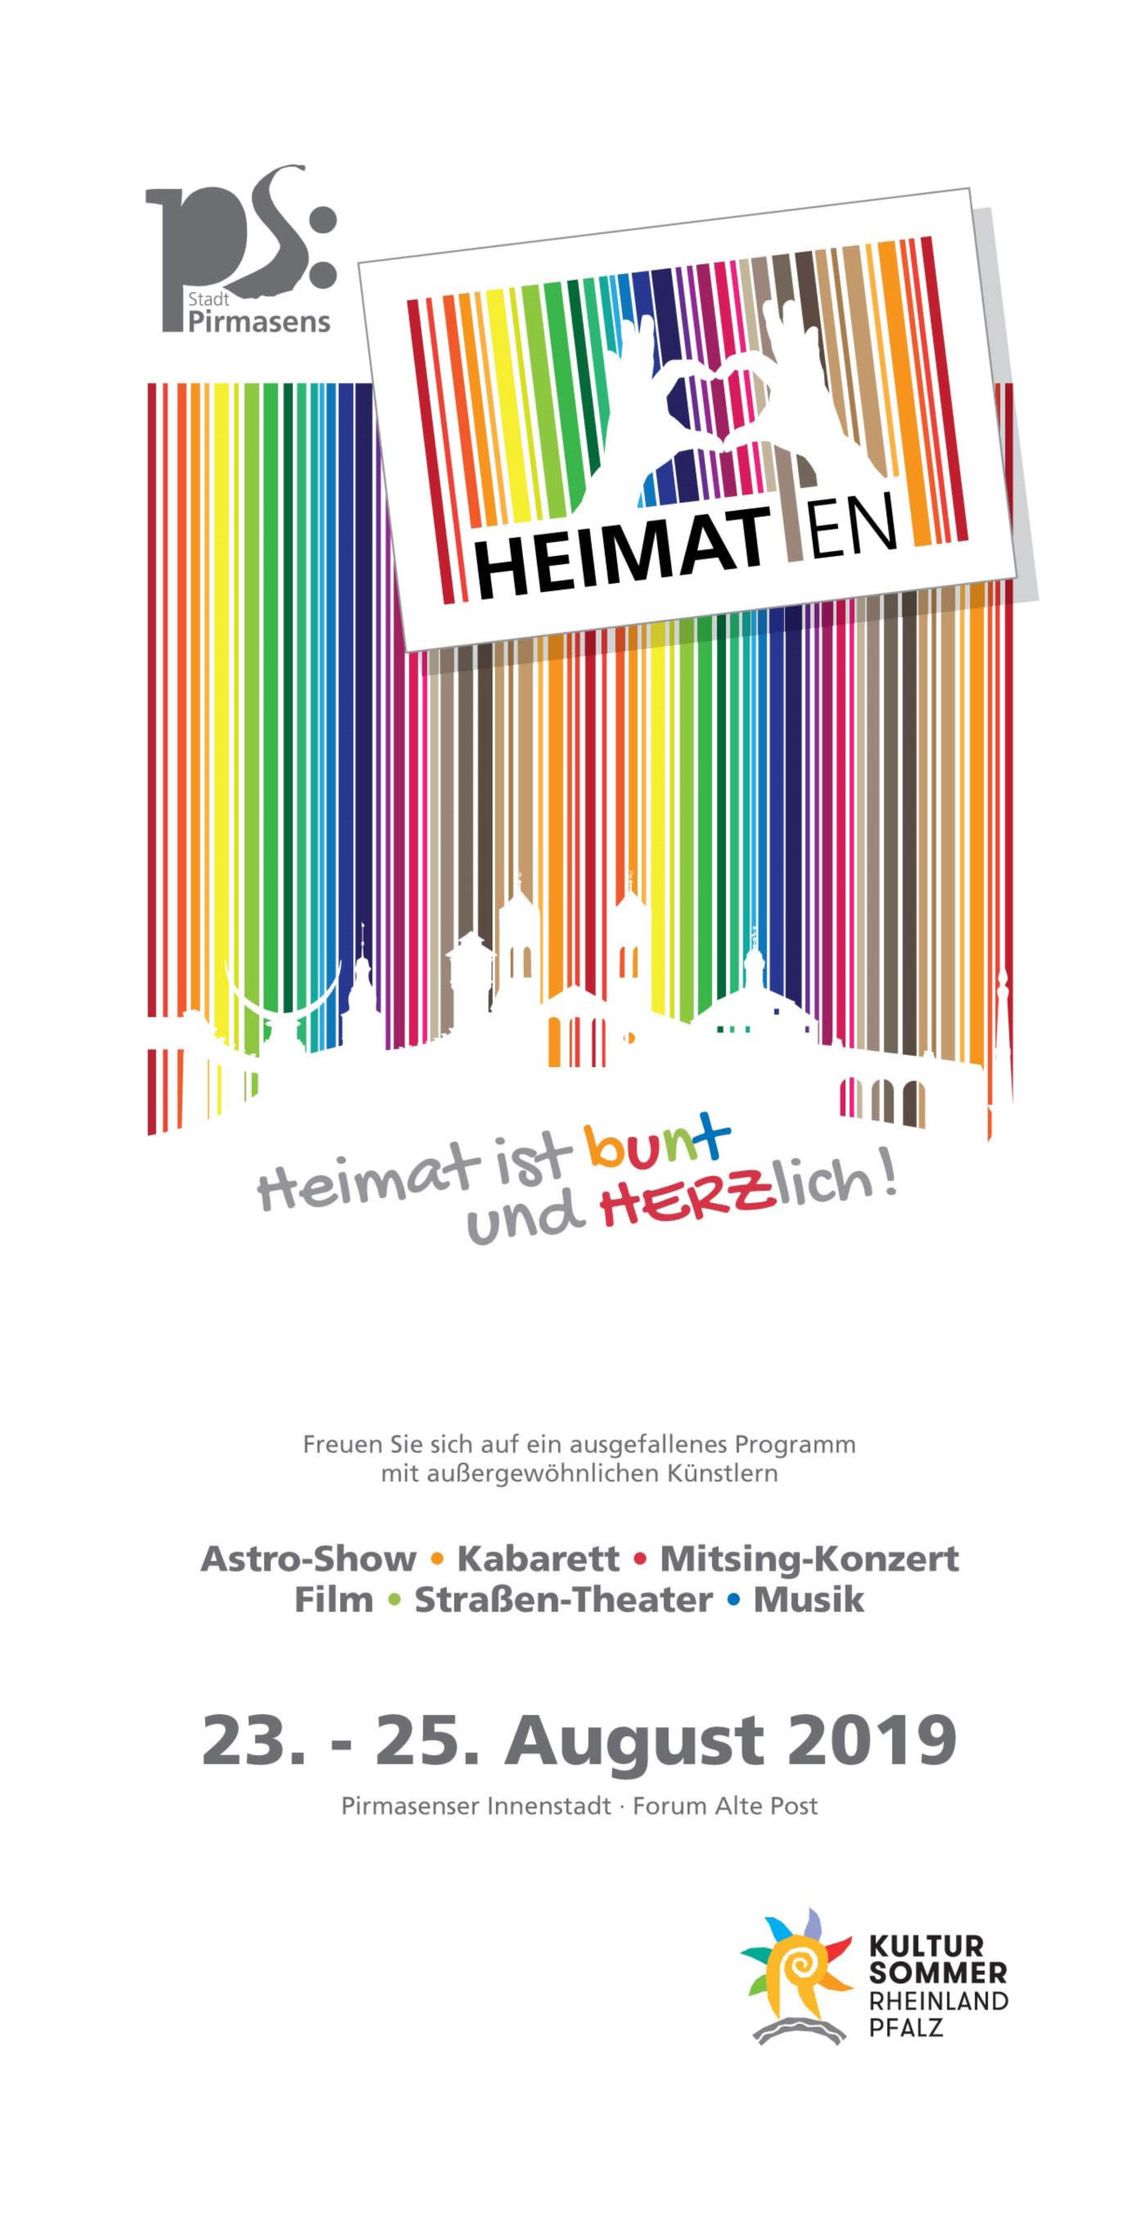 Titelseite Flyer Veranstaltung Heimaten Pirmasens Kultursommer